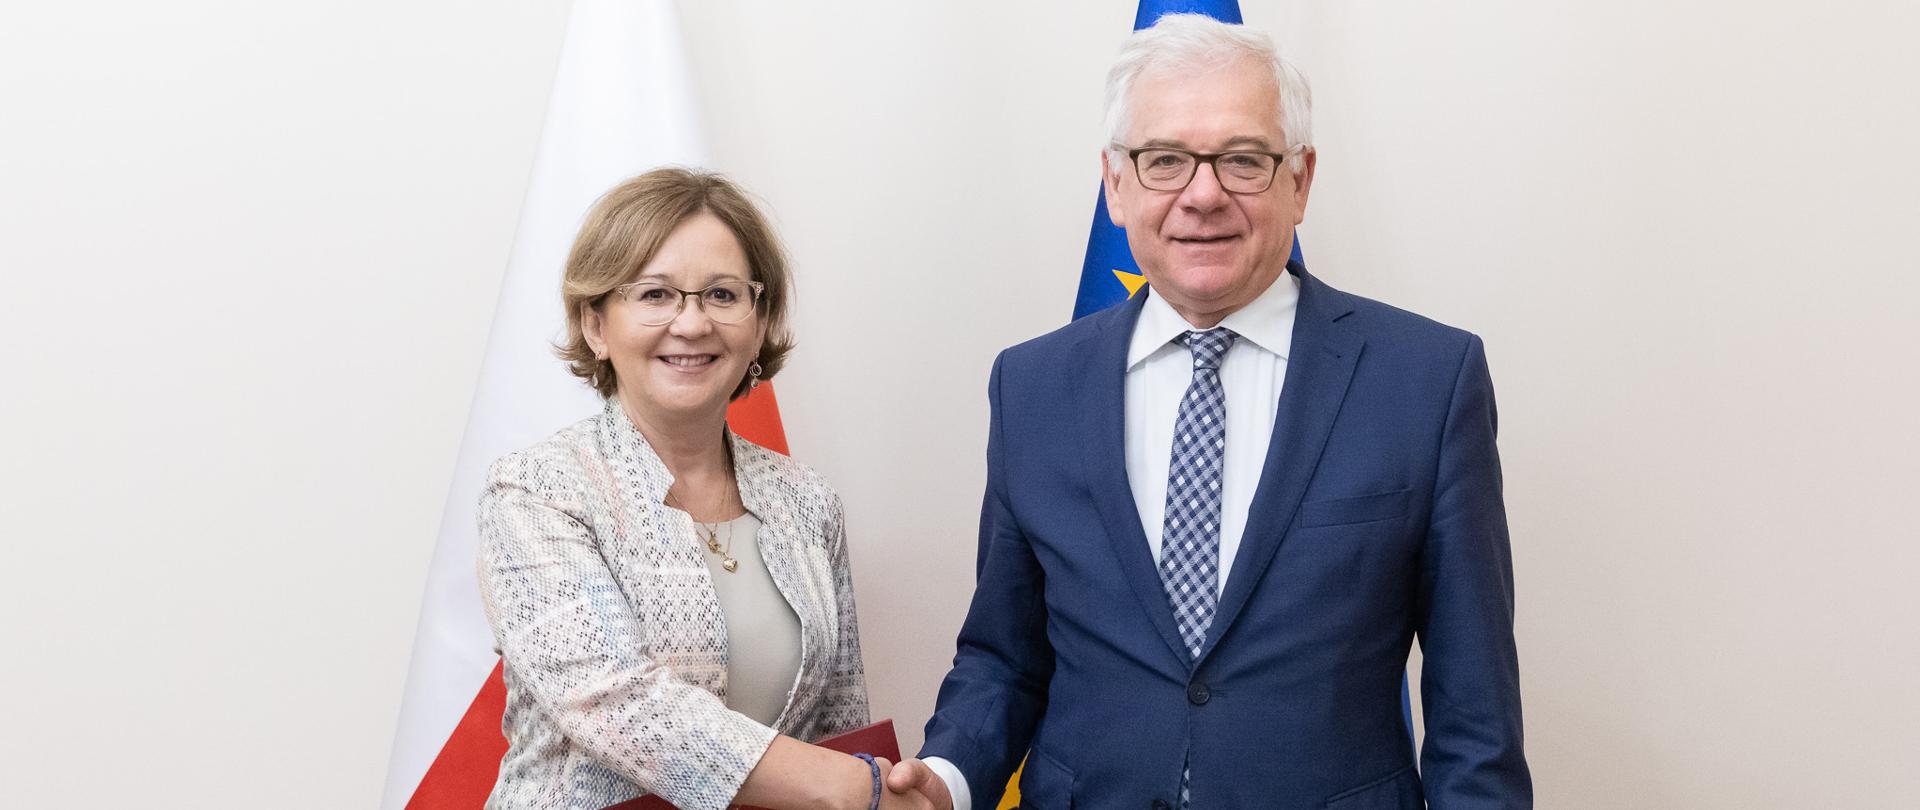 Anna Sochańska becomes Polish Ambassador to Ireland